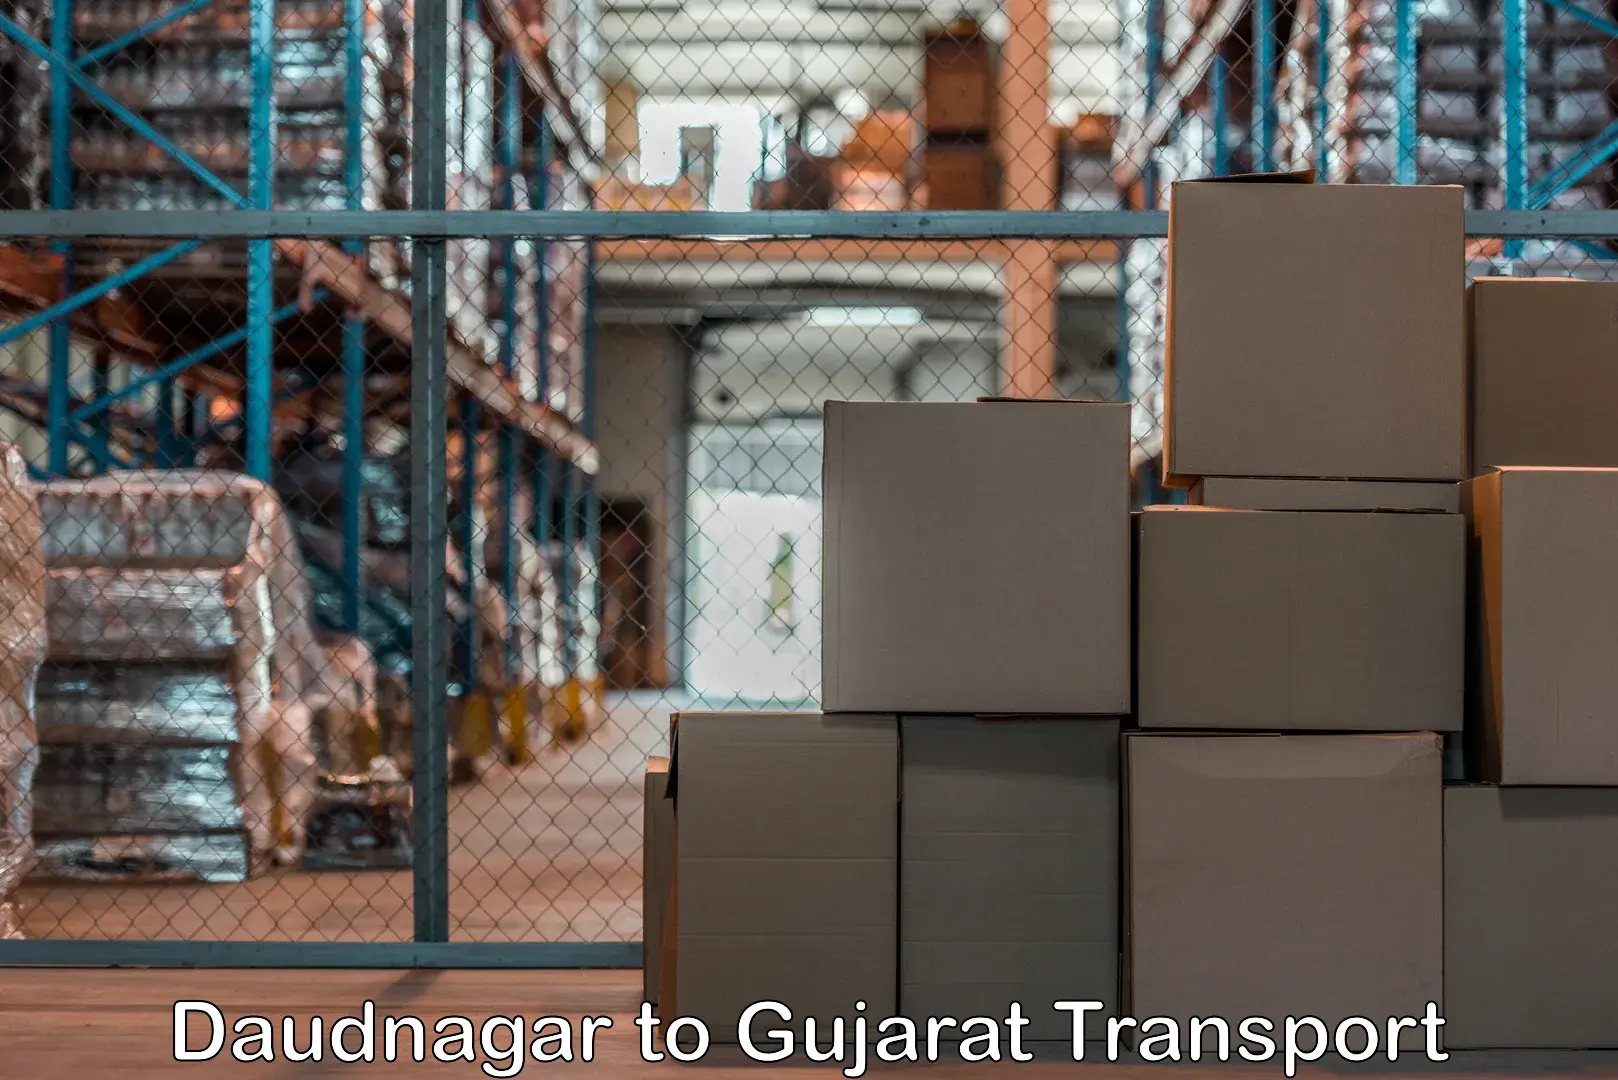 Air cargo transport services Daudnagar to Patan Gujarat